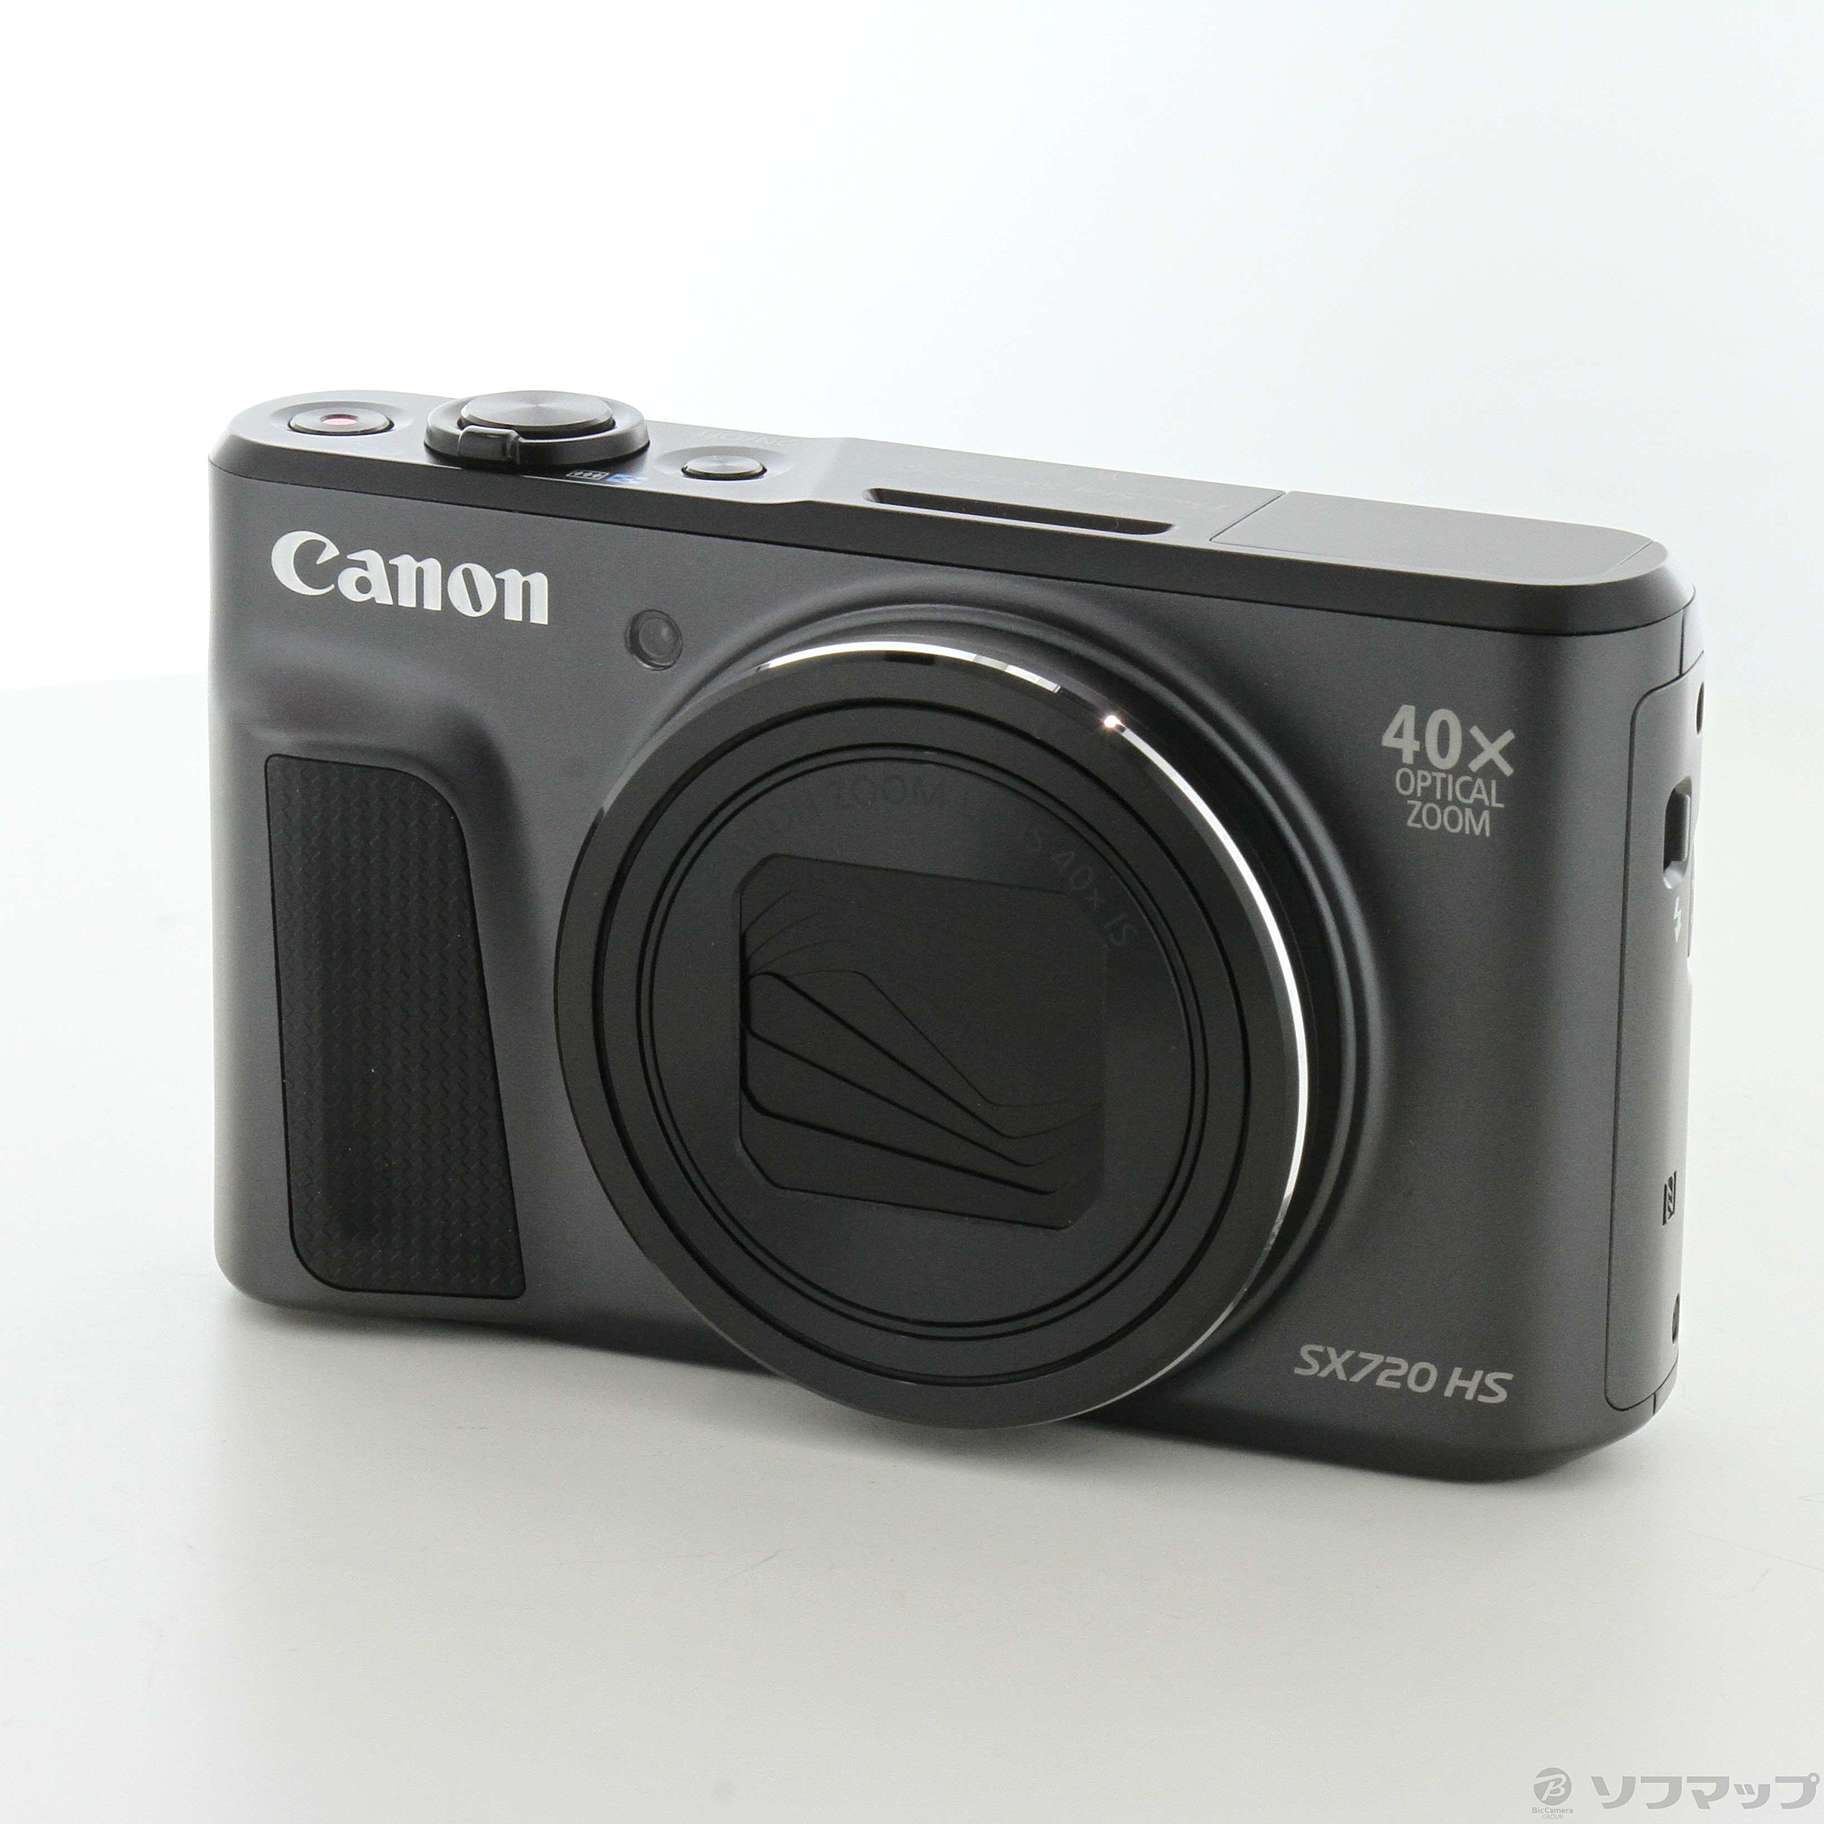 【売約済】■美品■ キャノン Canon PowerShot SX720 HS